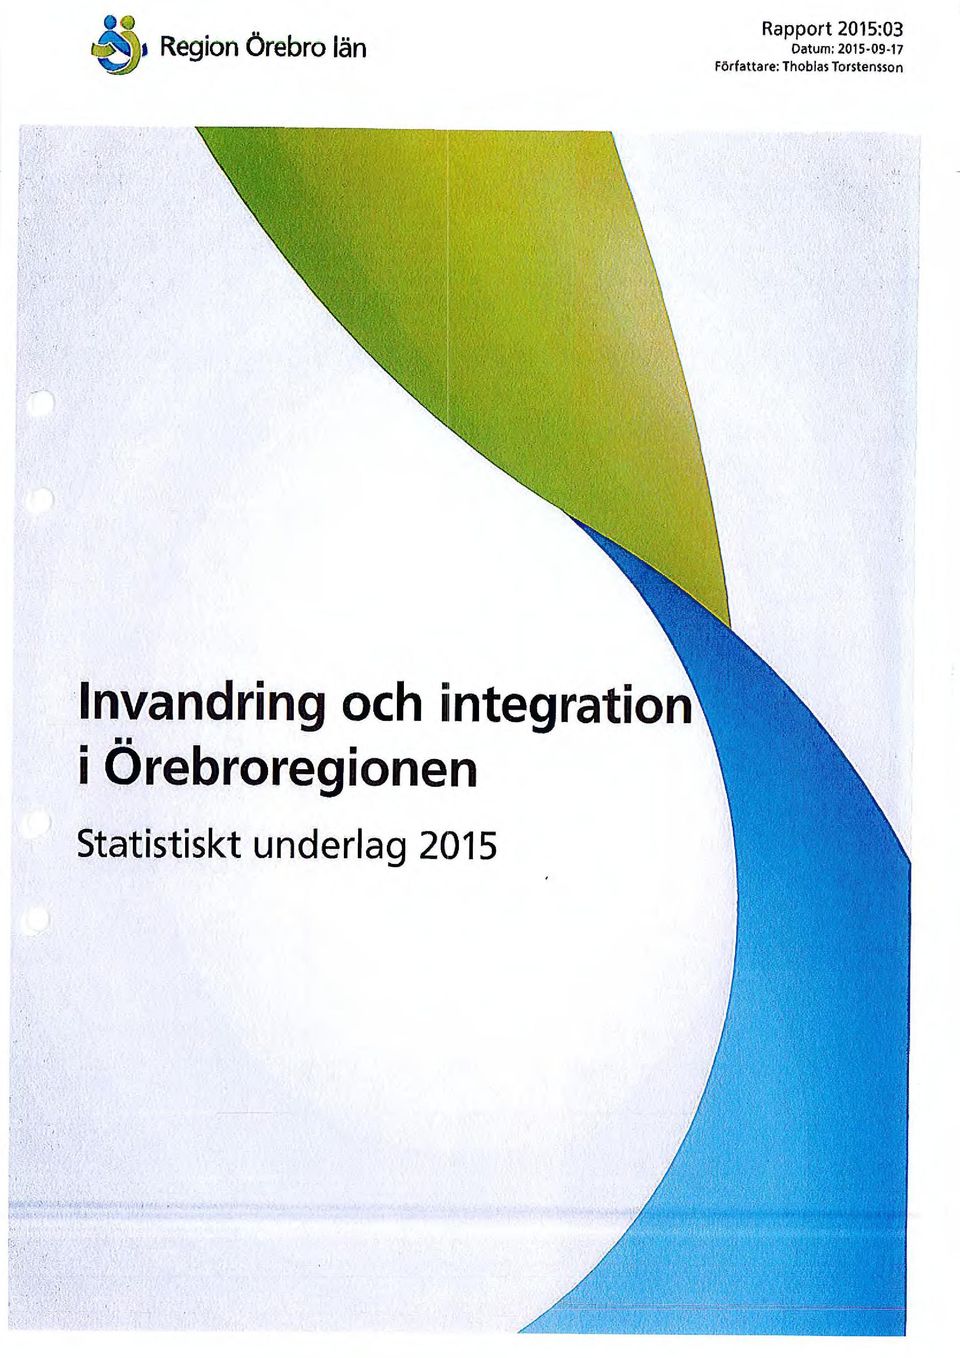 Torstensson Invandring och integration